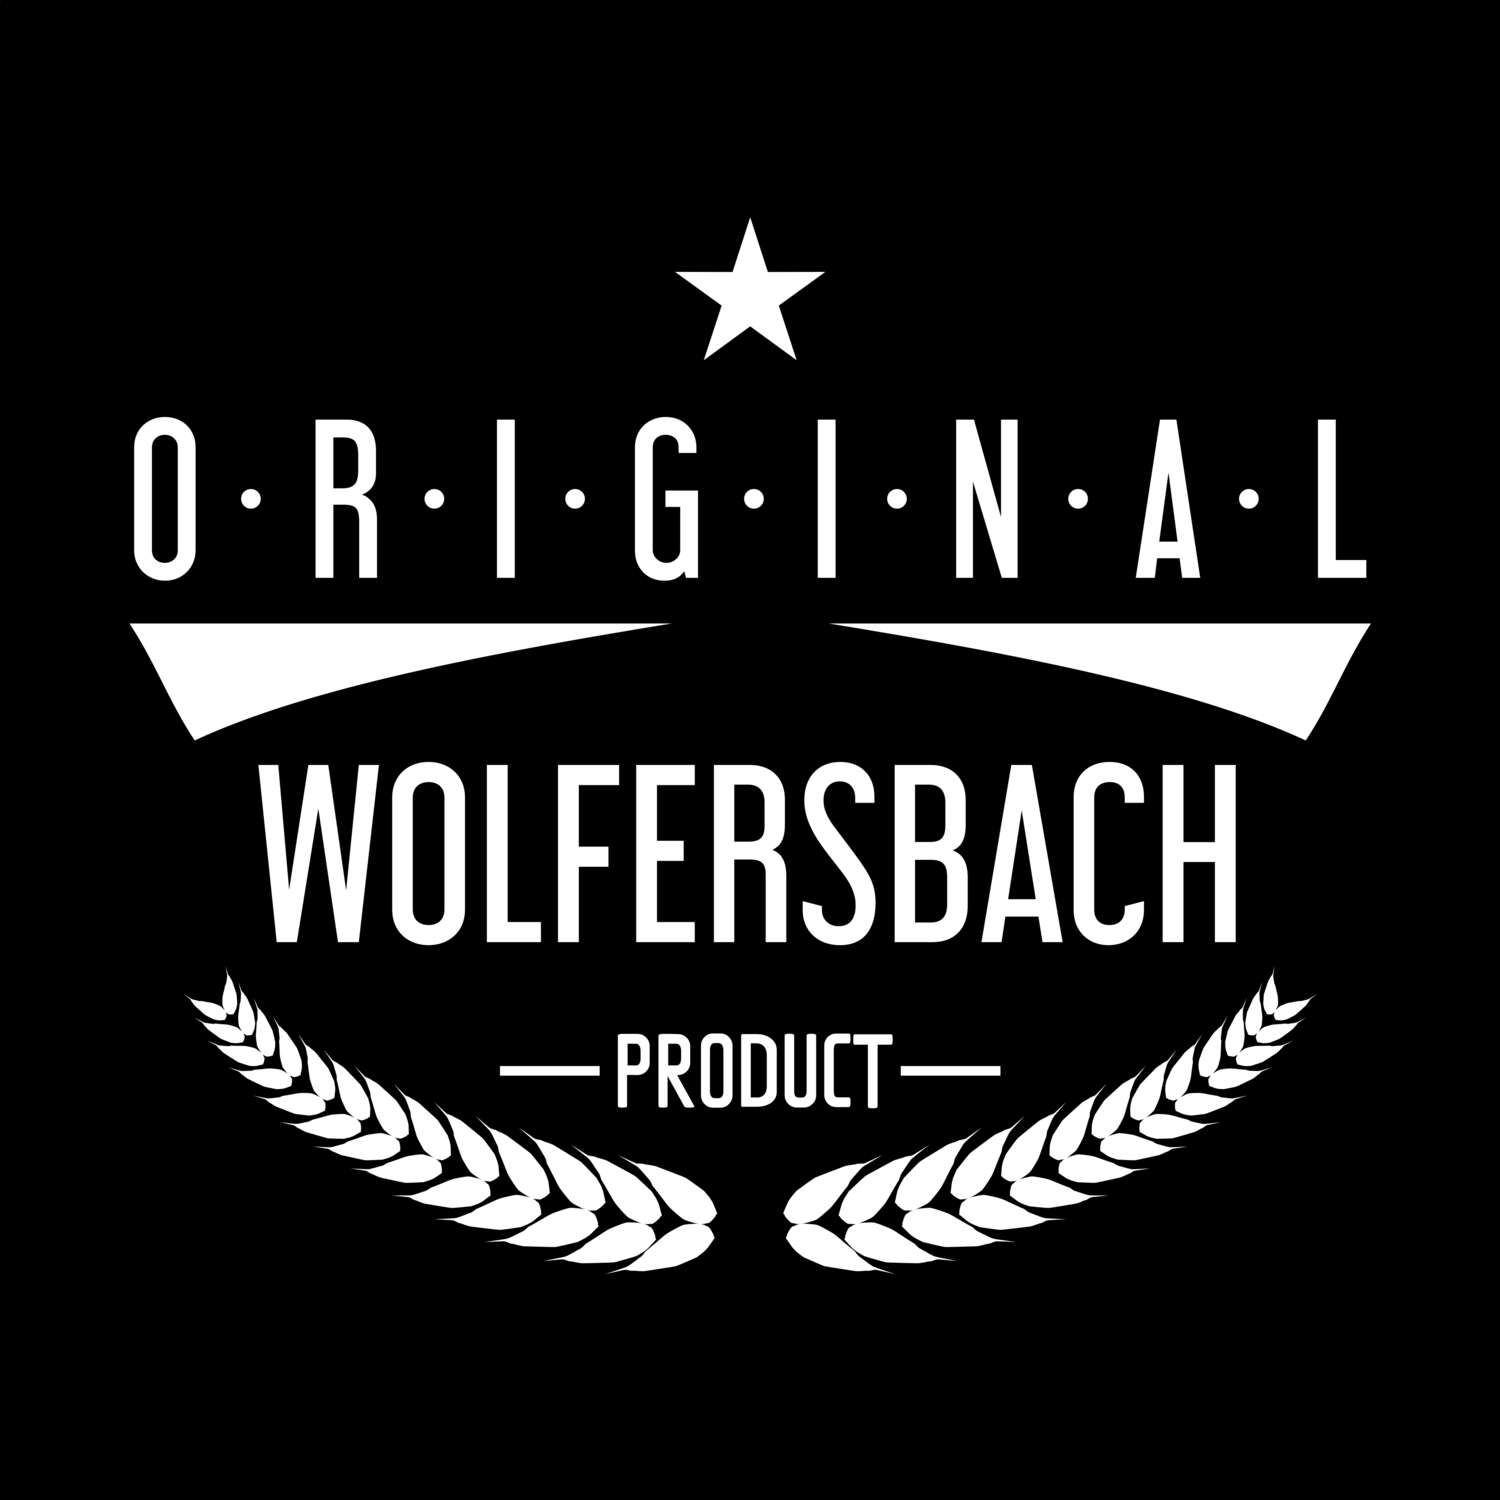 Wolfersbach T-Shirt »Original Product«